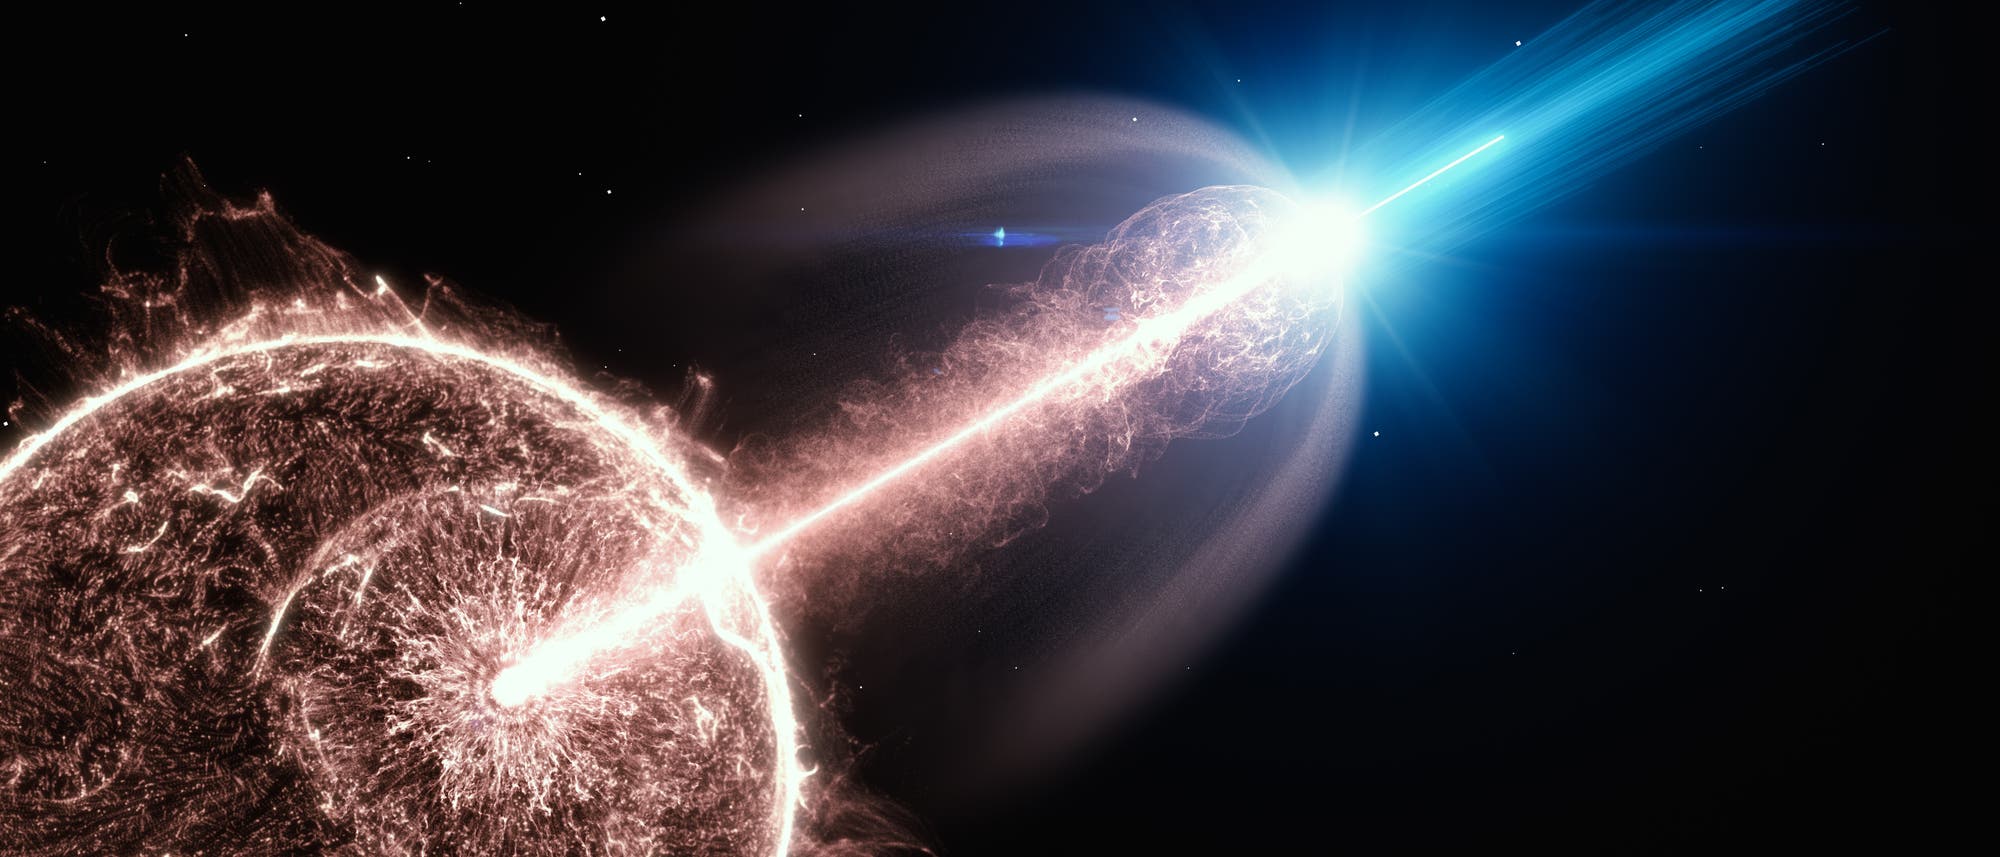 Immer mal wieder ereignen sich im Universum massive Explosionen, die zu Gammablitzen führen können. (künstlerische Darstellung)